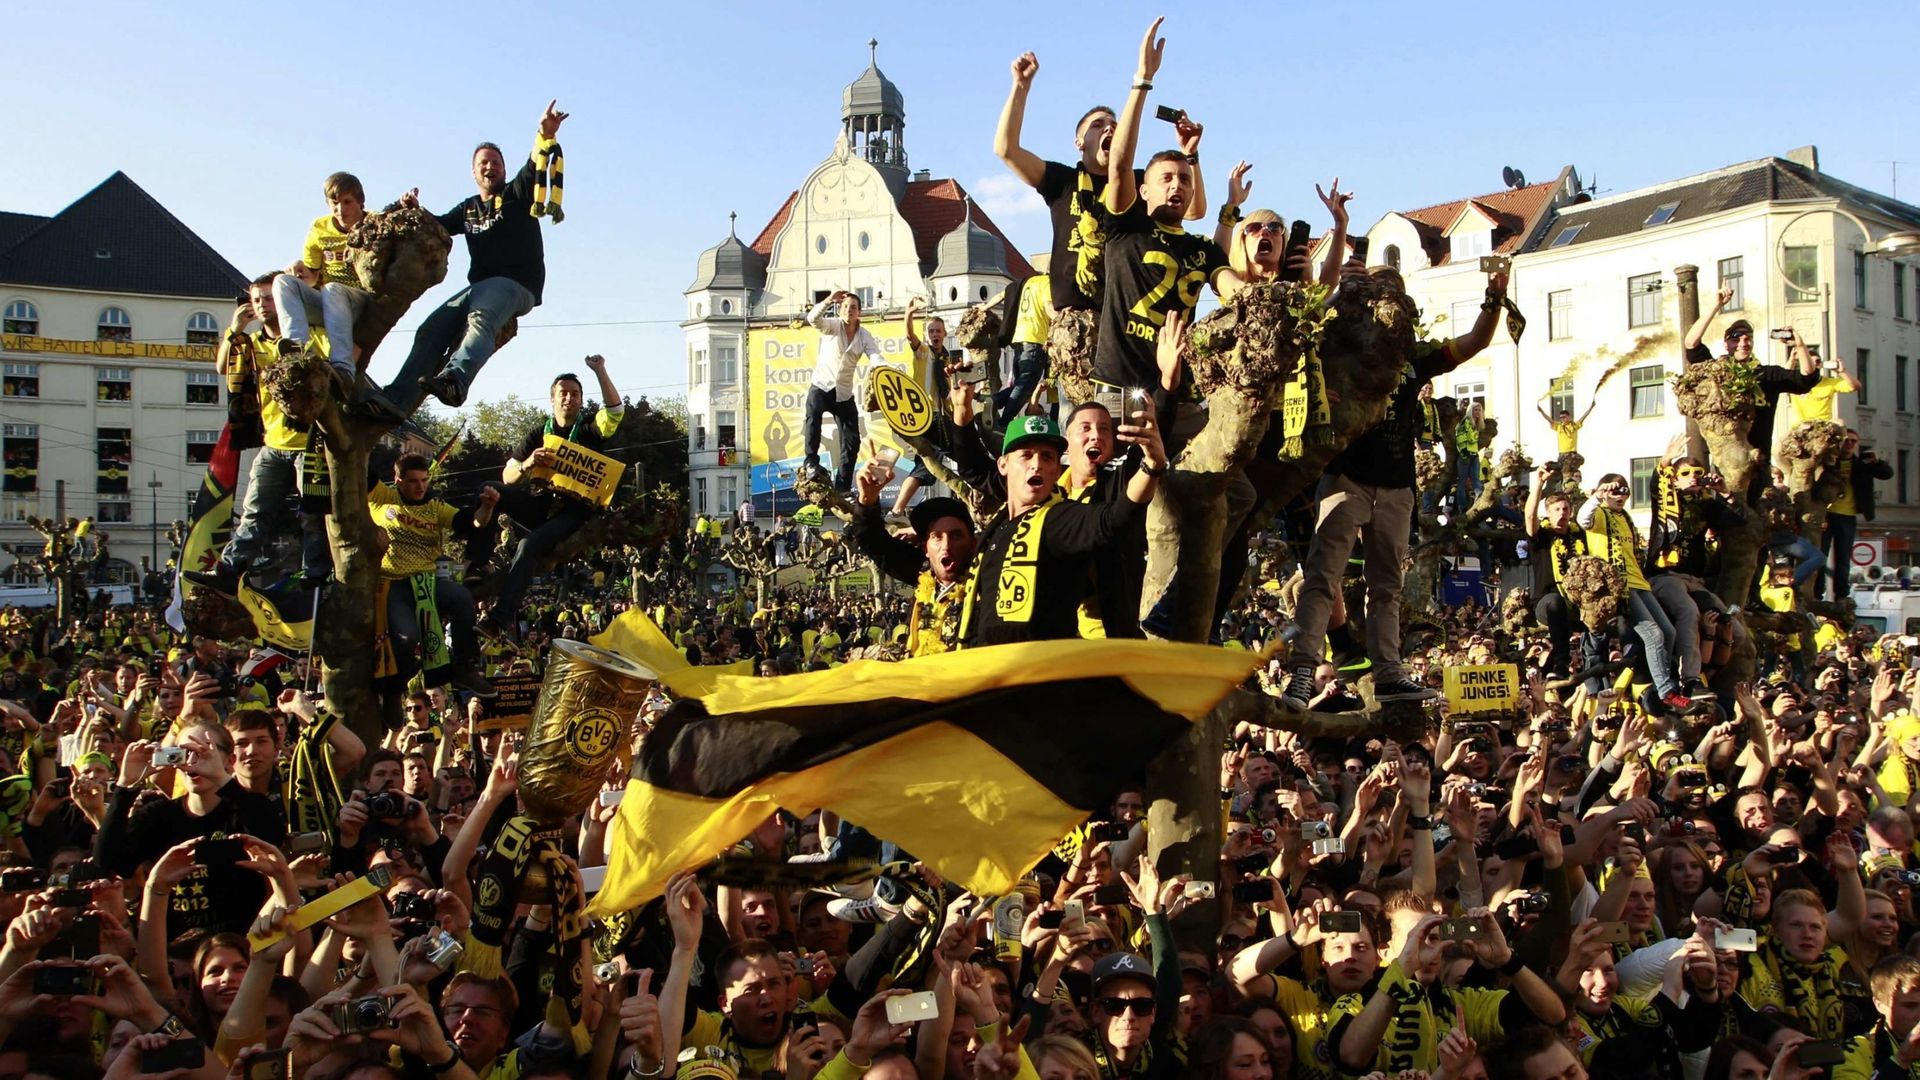 Les fans du Borussia Dortmund, champion d’Allemagne, célèbrent l’équipe lors d’une parade après avoir remporté la finale de la Coupe d’Allemagne DFB Pokal, à Dortmund, dans l’ouest de l’Allemagne, le 13 mai 2012. Les champions de la Bundesliga, Borussia D